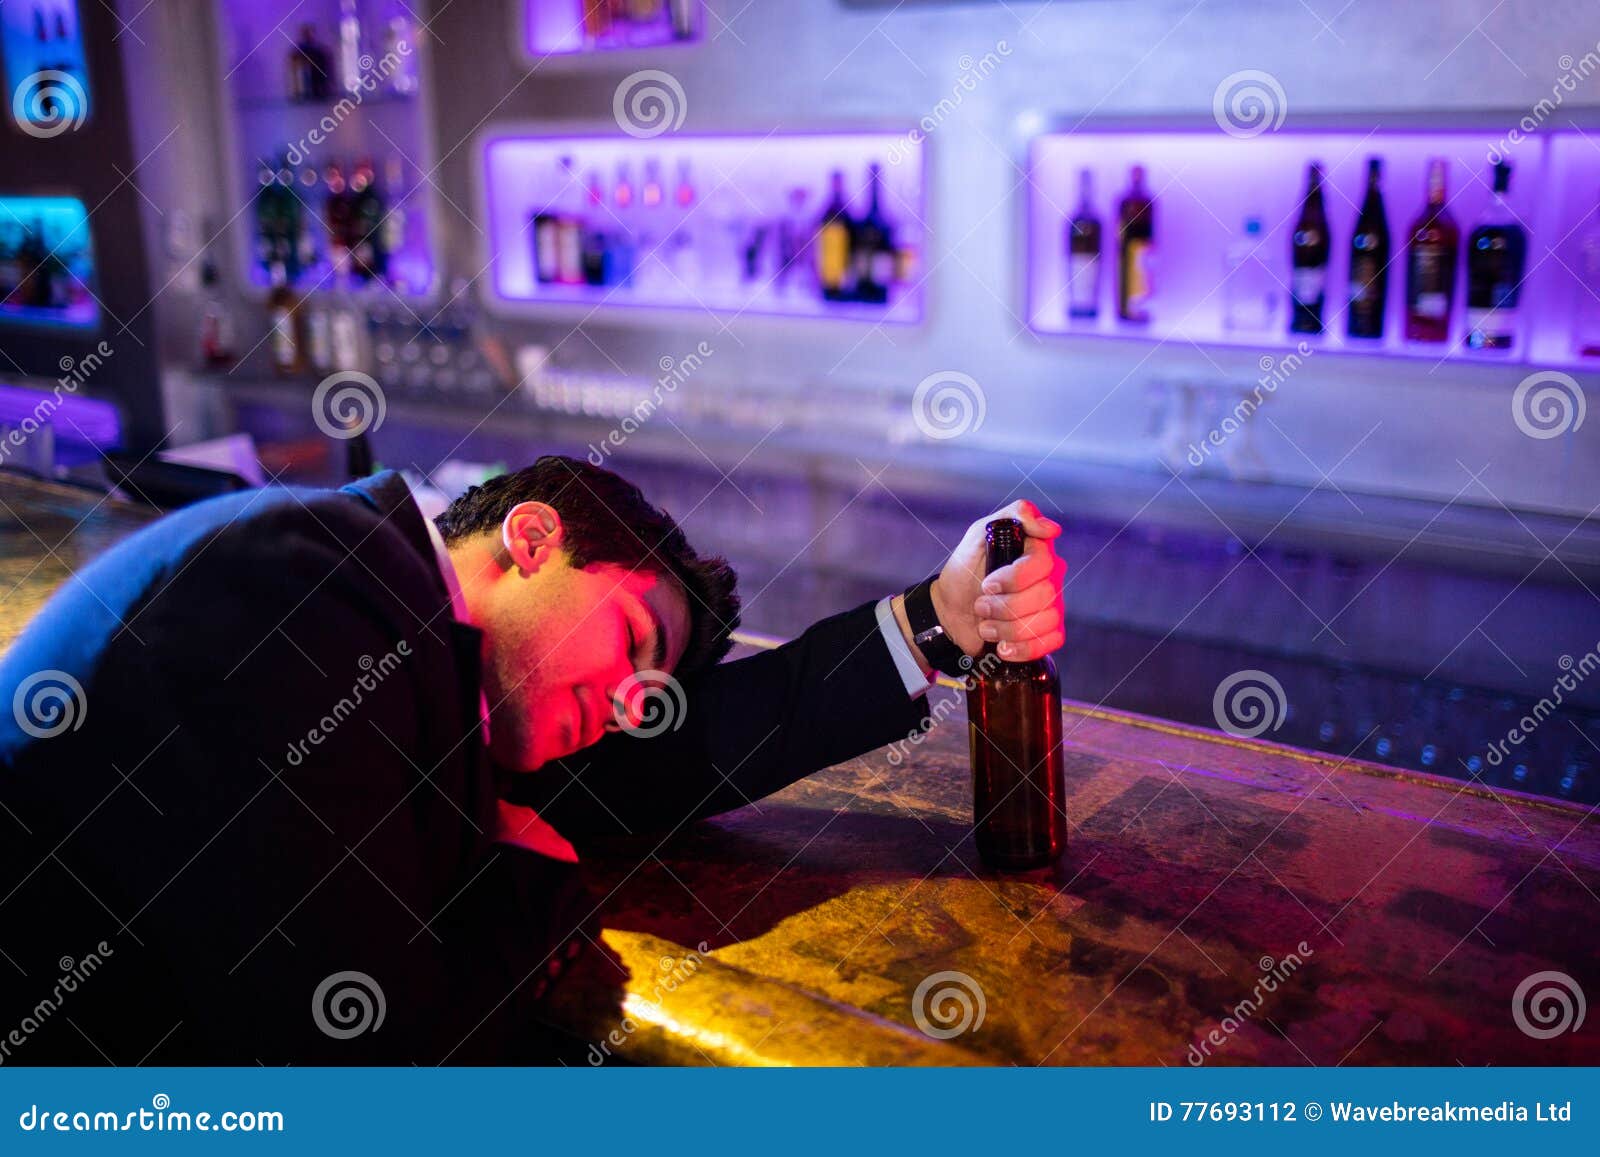 Drunken Man Sleeping on Bar Counter Stock Photo - Image of eyes ...